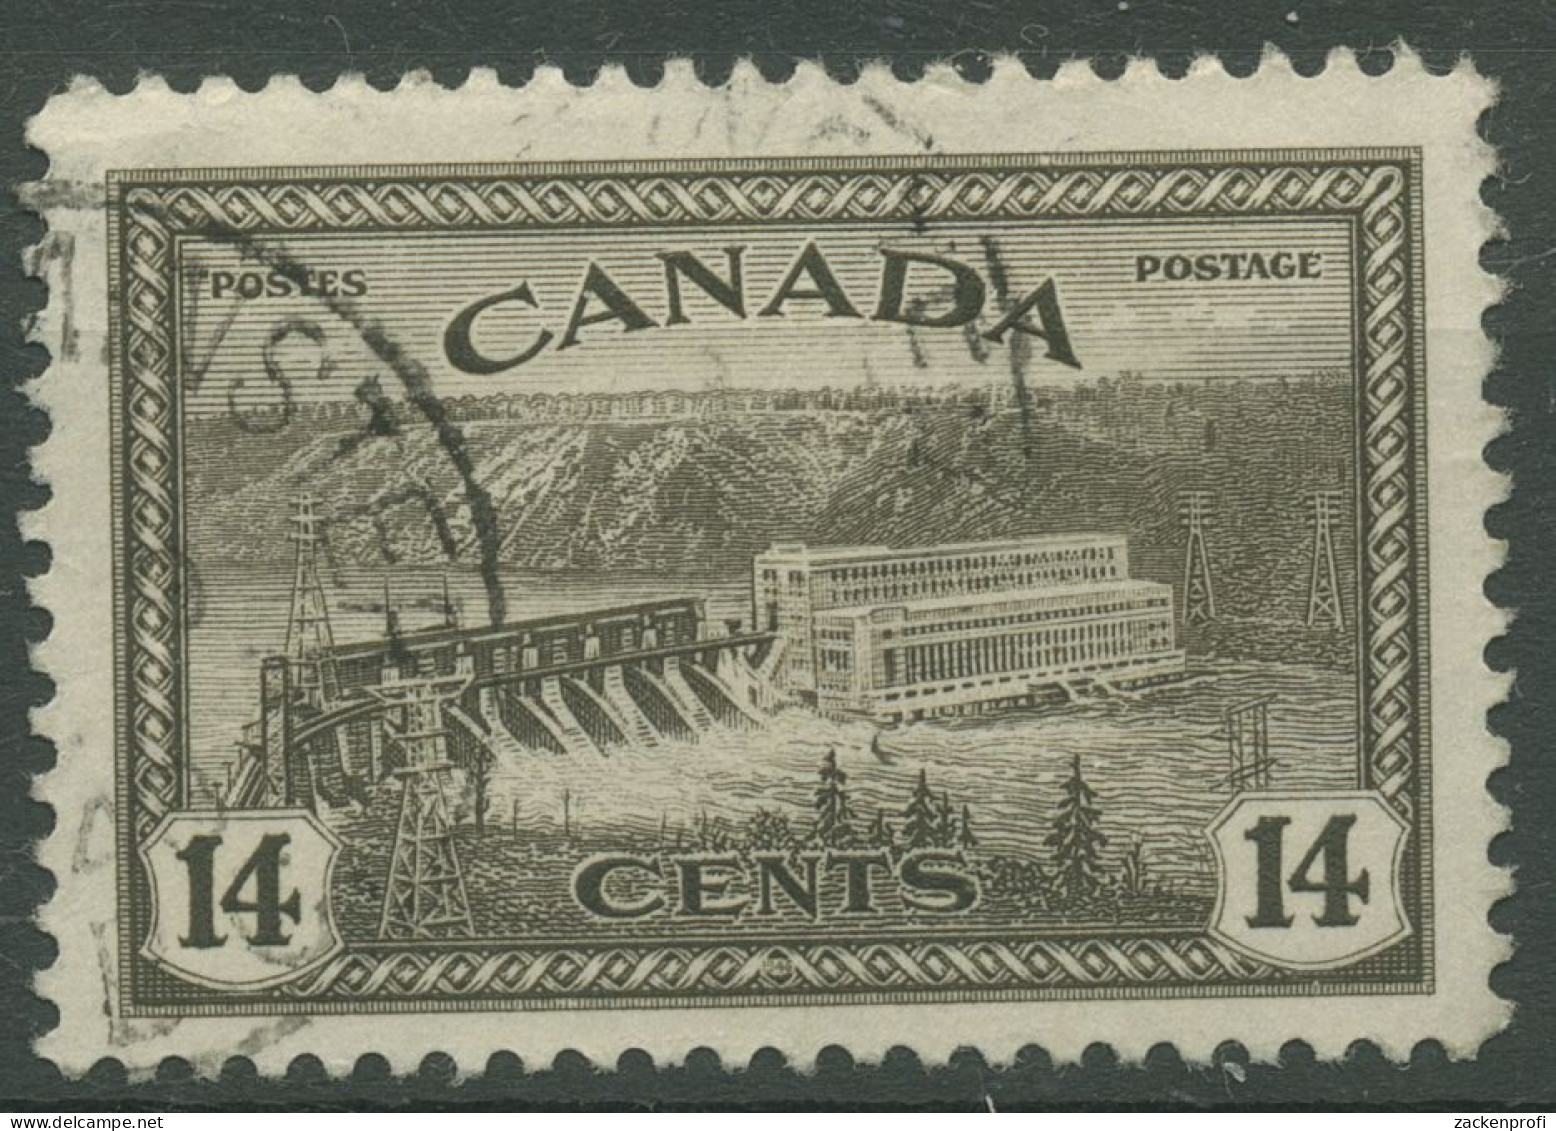 Kanada 1946 Umstellung Auf Friedensproduktion Wasserkraftwerk 237 Gestempelt - Gebraucht